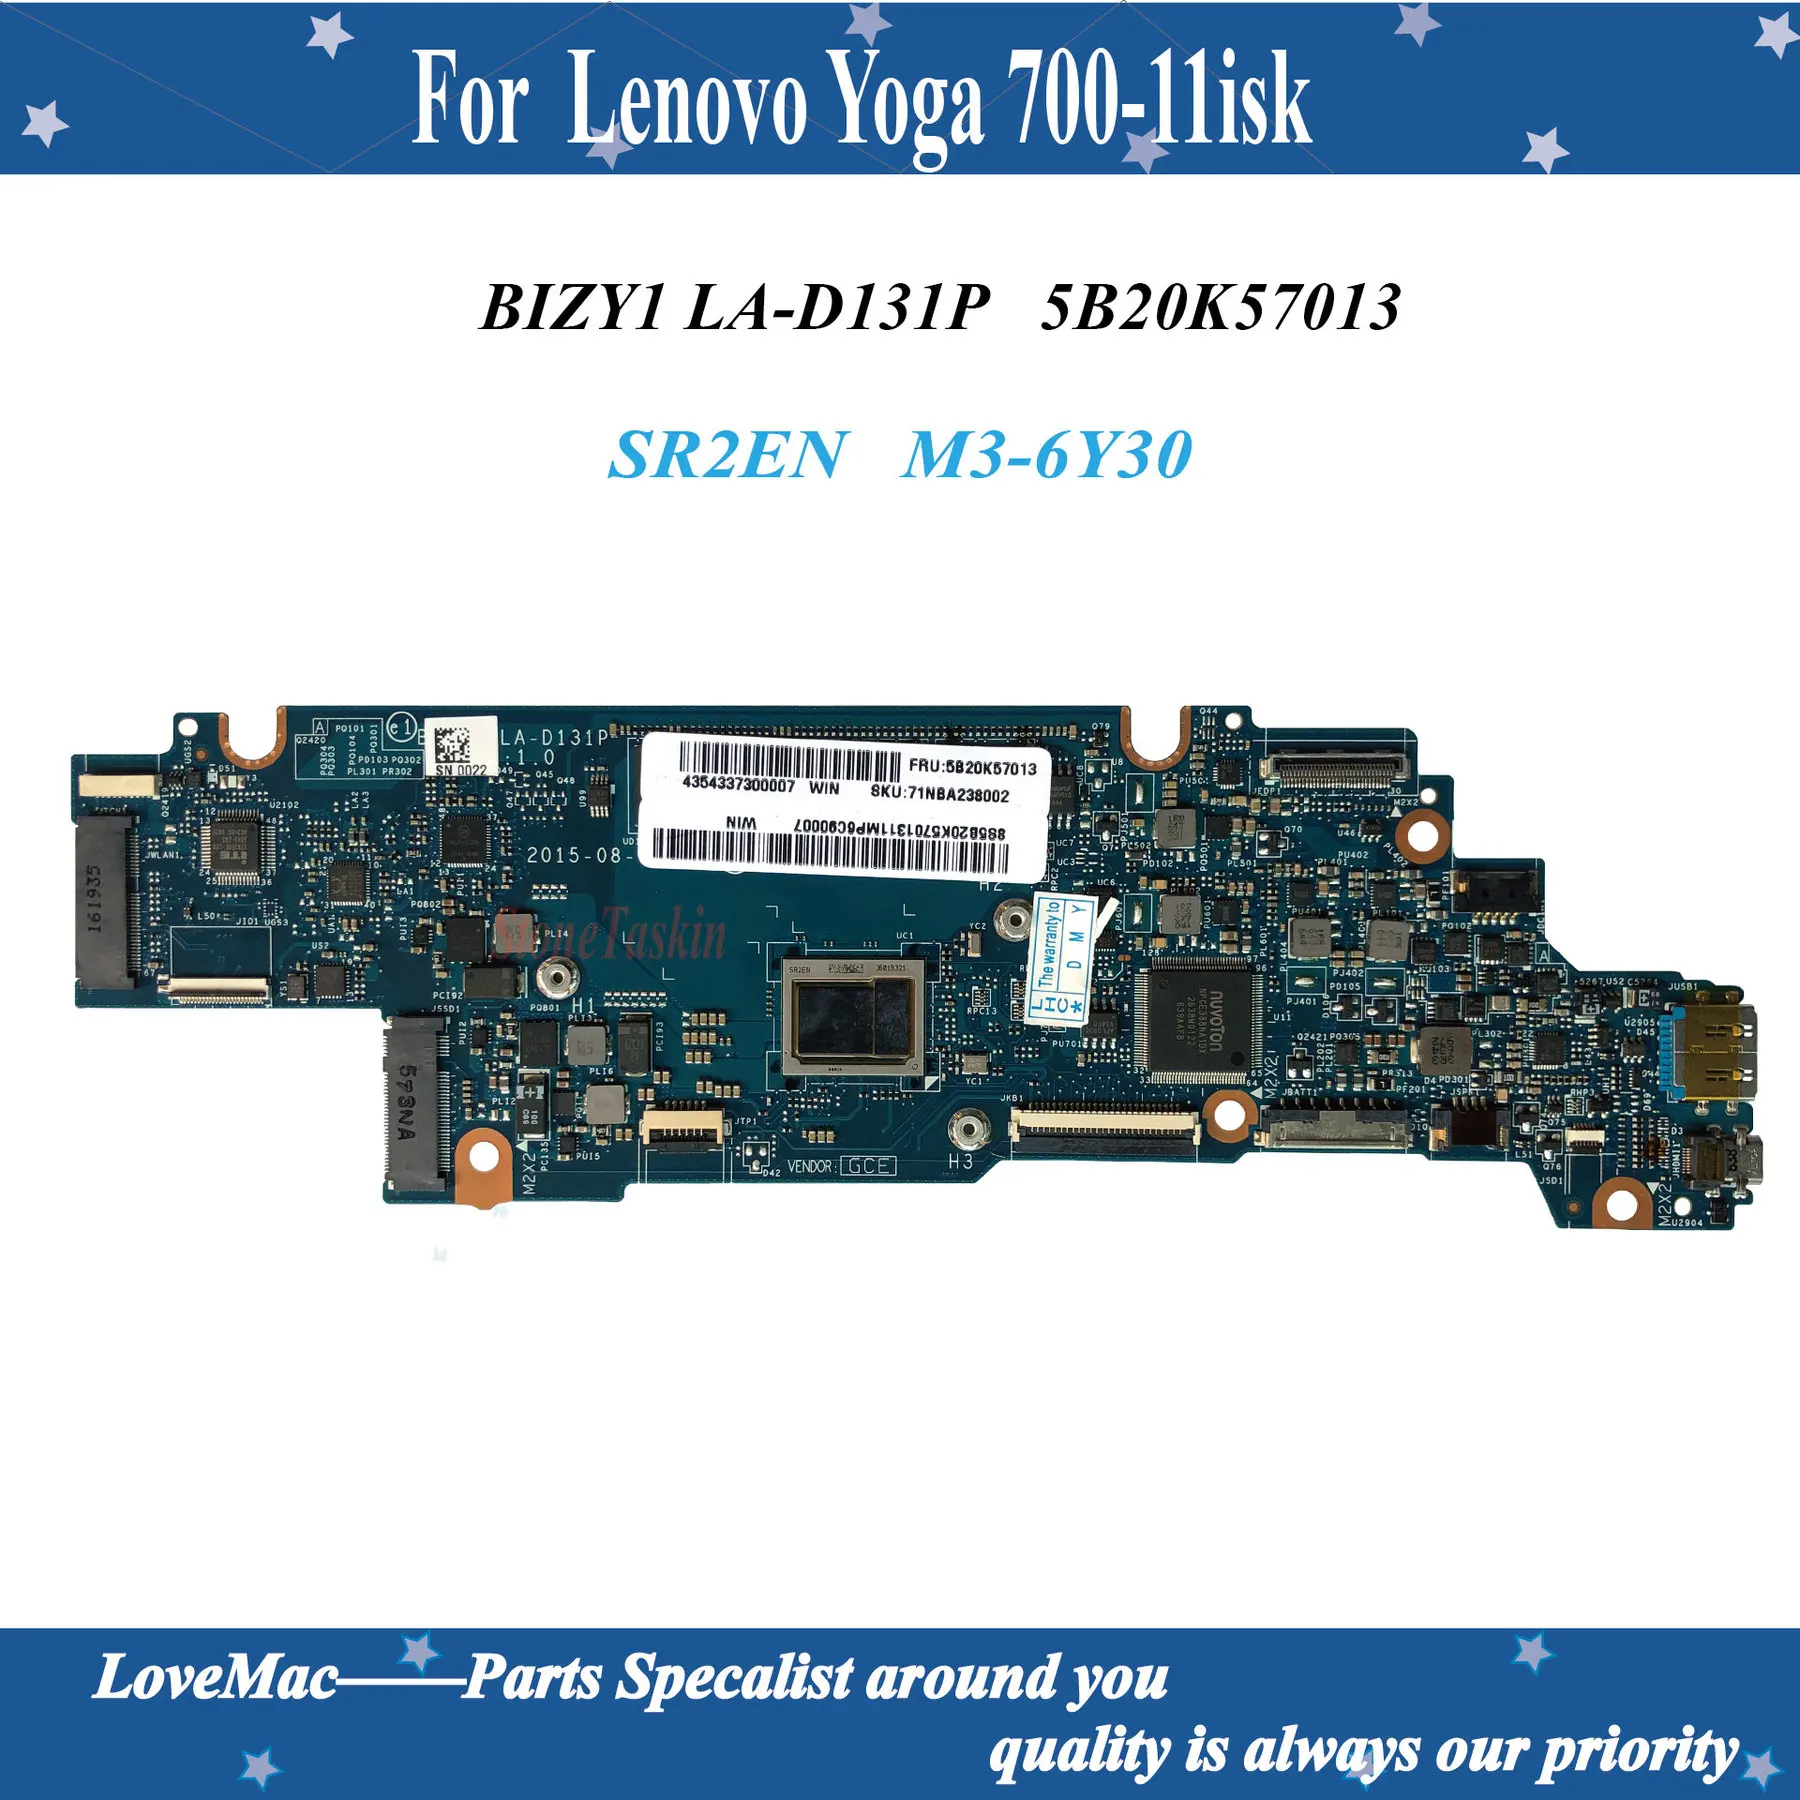 

Высококачественная материнская плата для ноутбука FRU 5B20K57013 BIZY1 LA-D131P для Lenovo Yoga 700-11isk 11,6 дюйма SR2EN M3-6Y30 100% протестирована